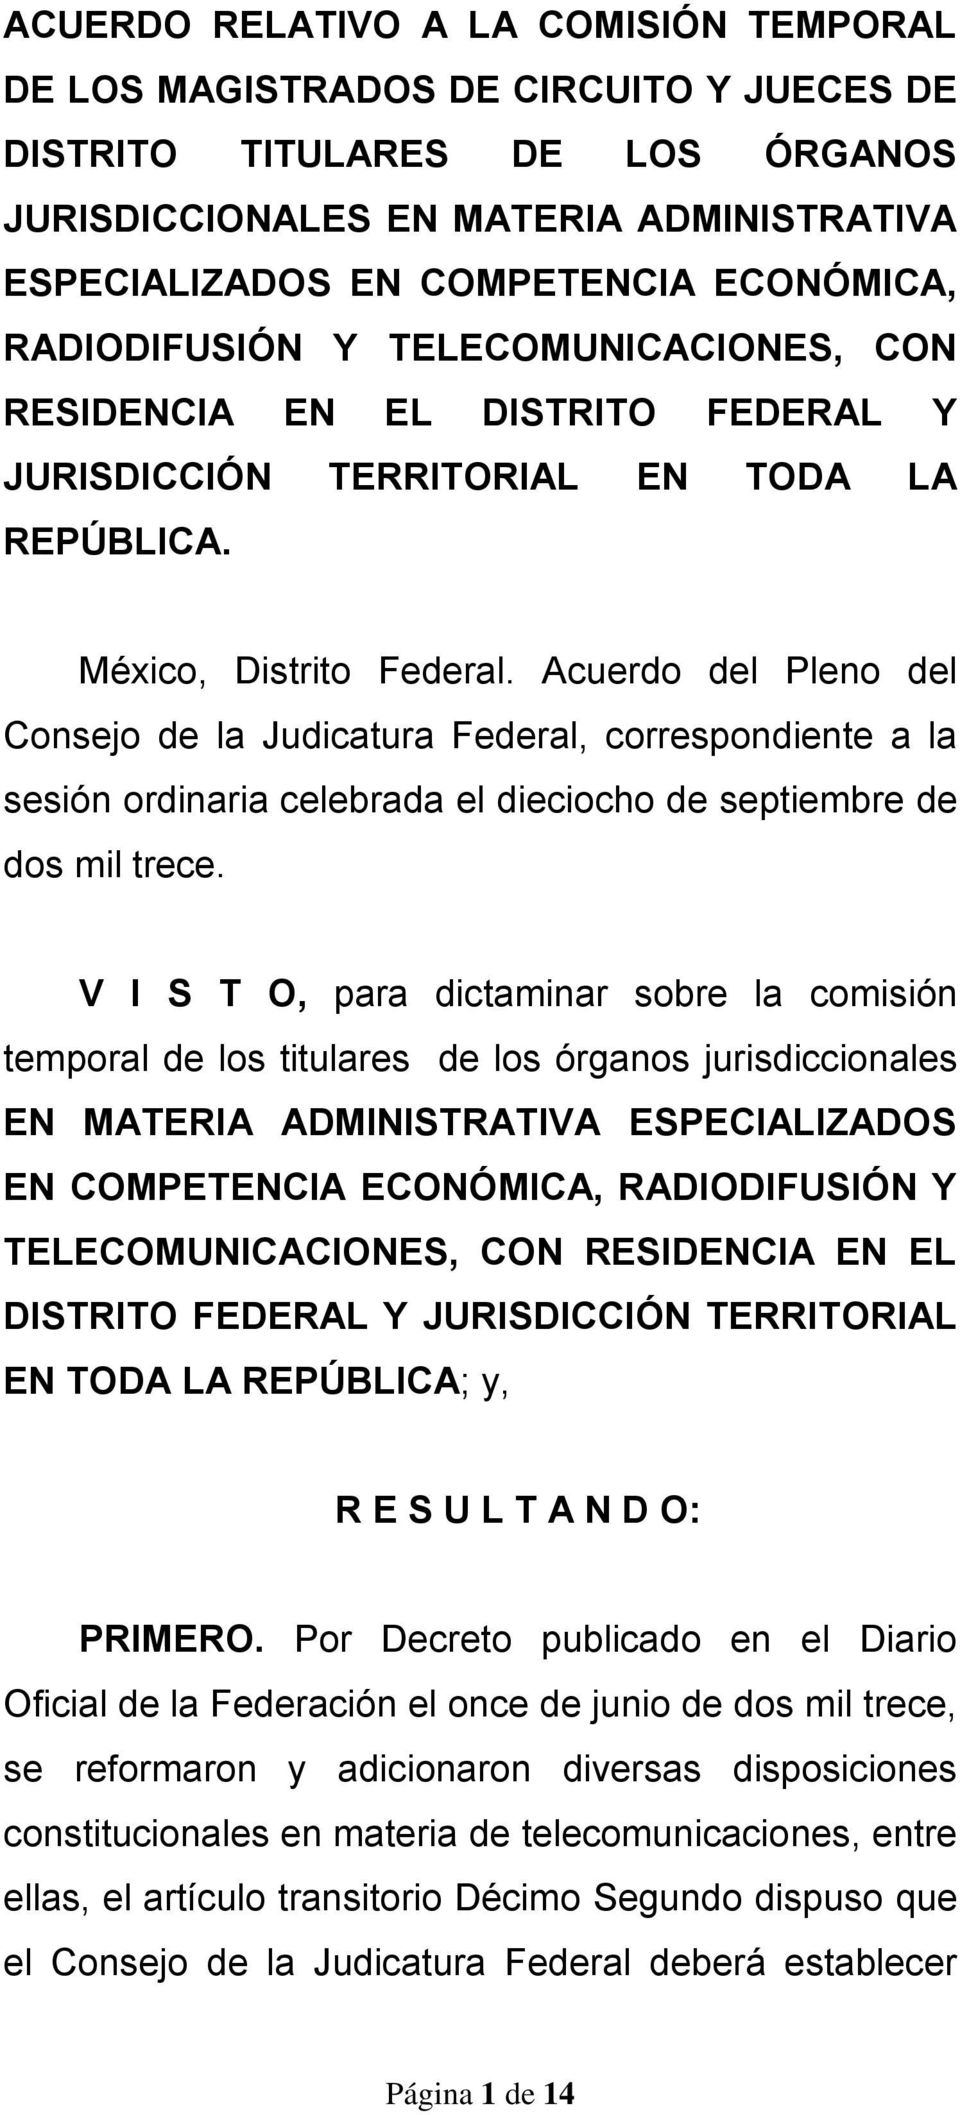 Acuerdo del Pleno del Consejo de la Judicatura Federal, correspondiente a la sesión ordinaria celebrada el dieciocho de septiembre de dos mil trece.